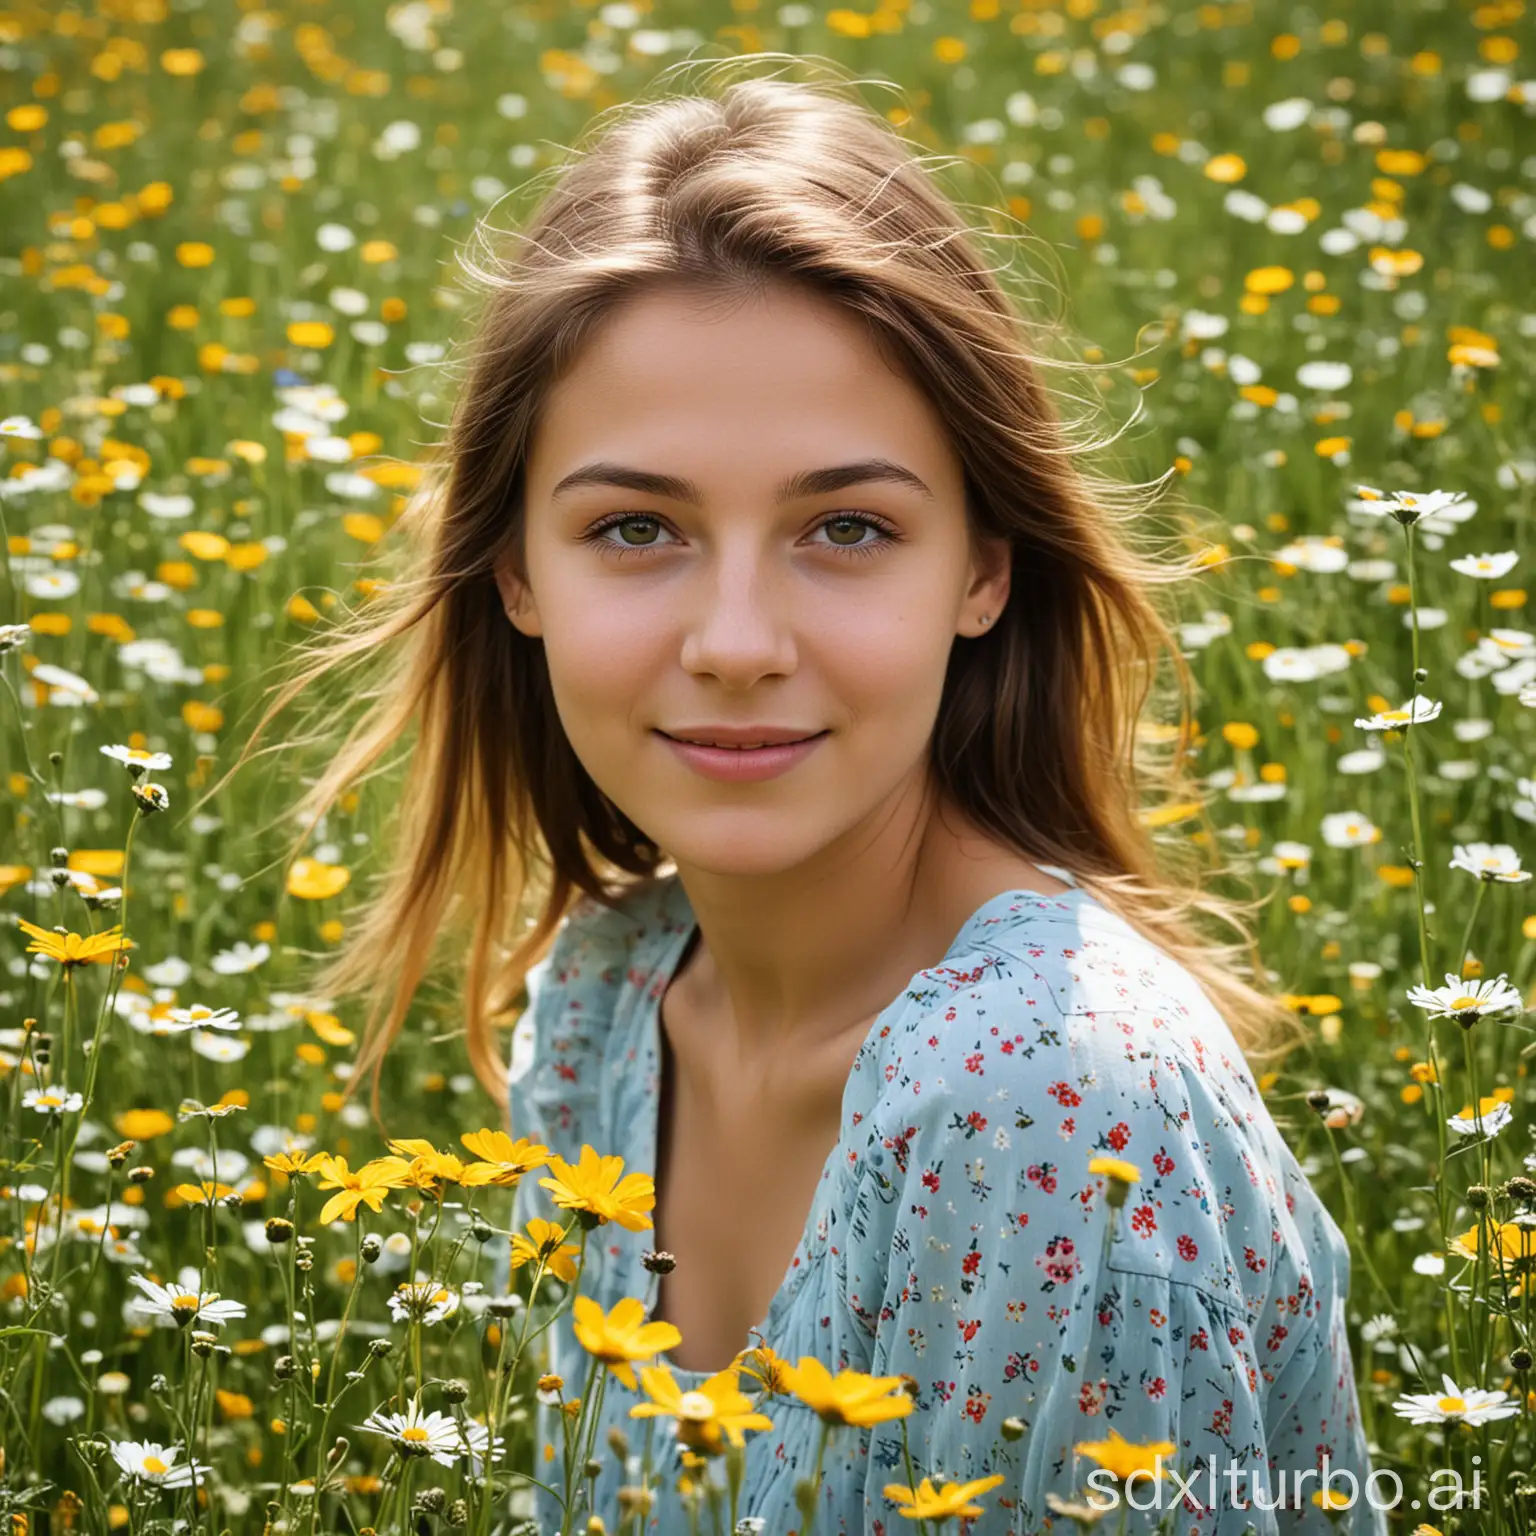 Girl on a flower meadow